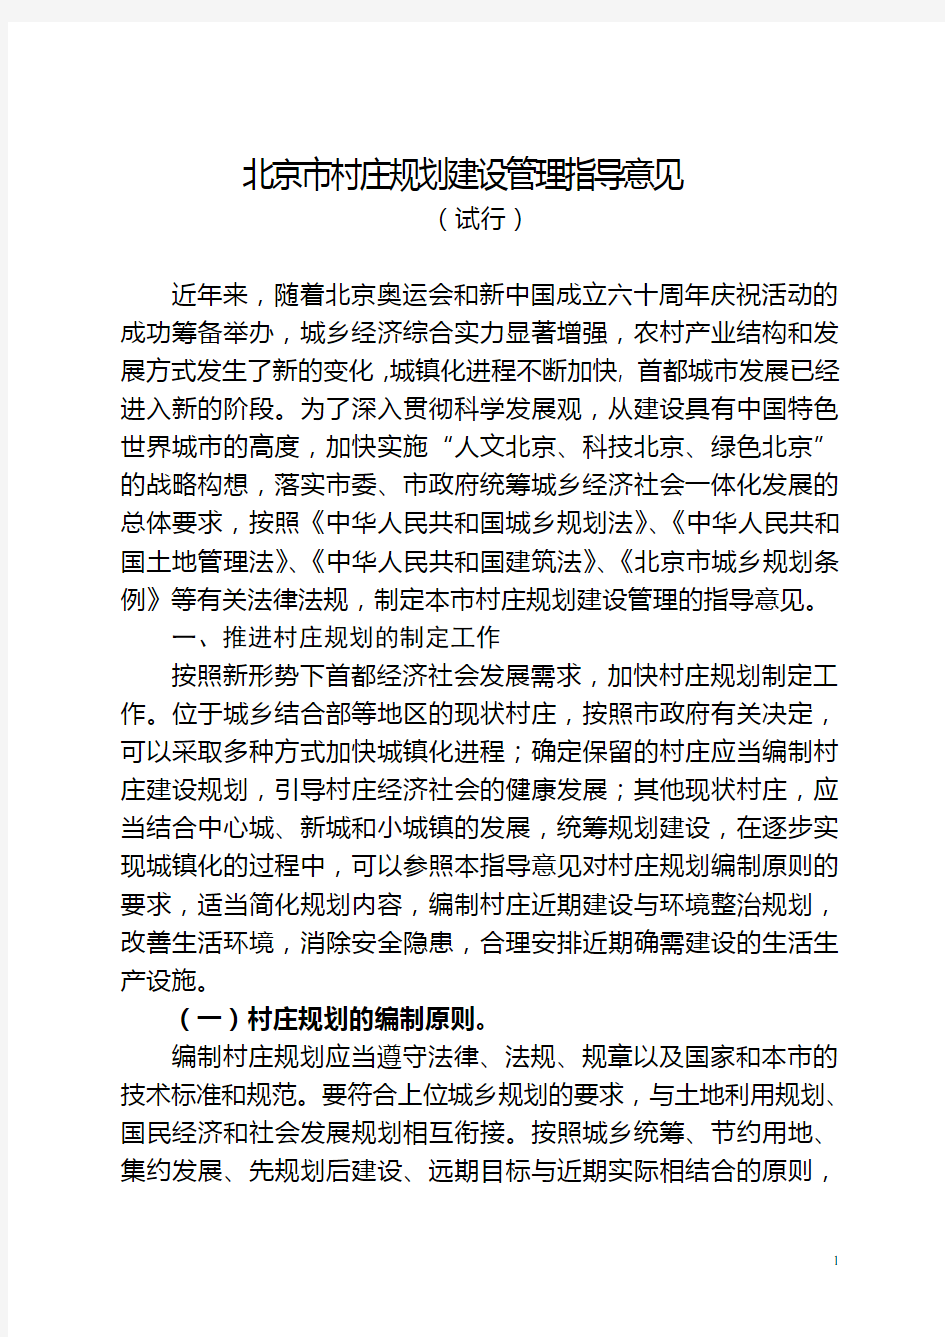 北京村庄建设规划管理指导意见-北京国土资源局